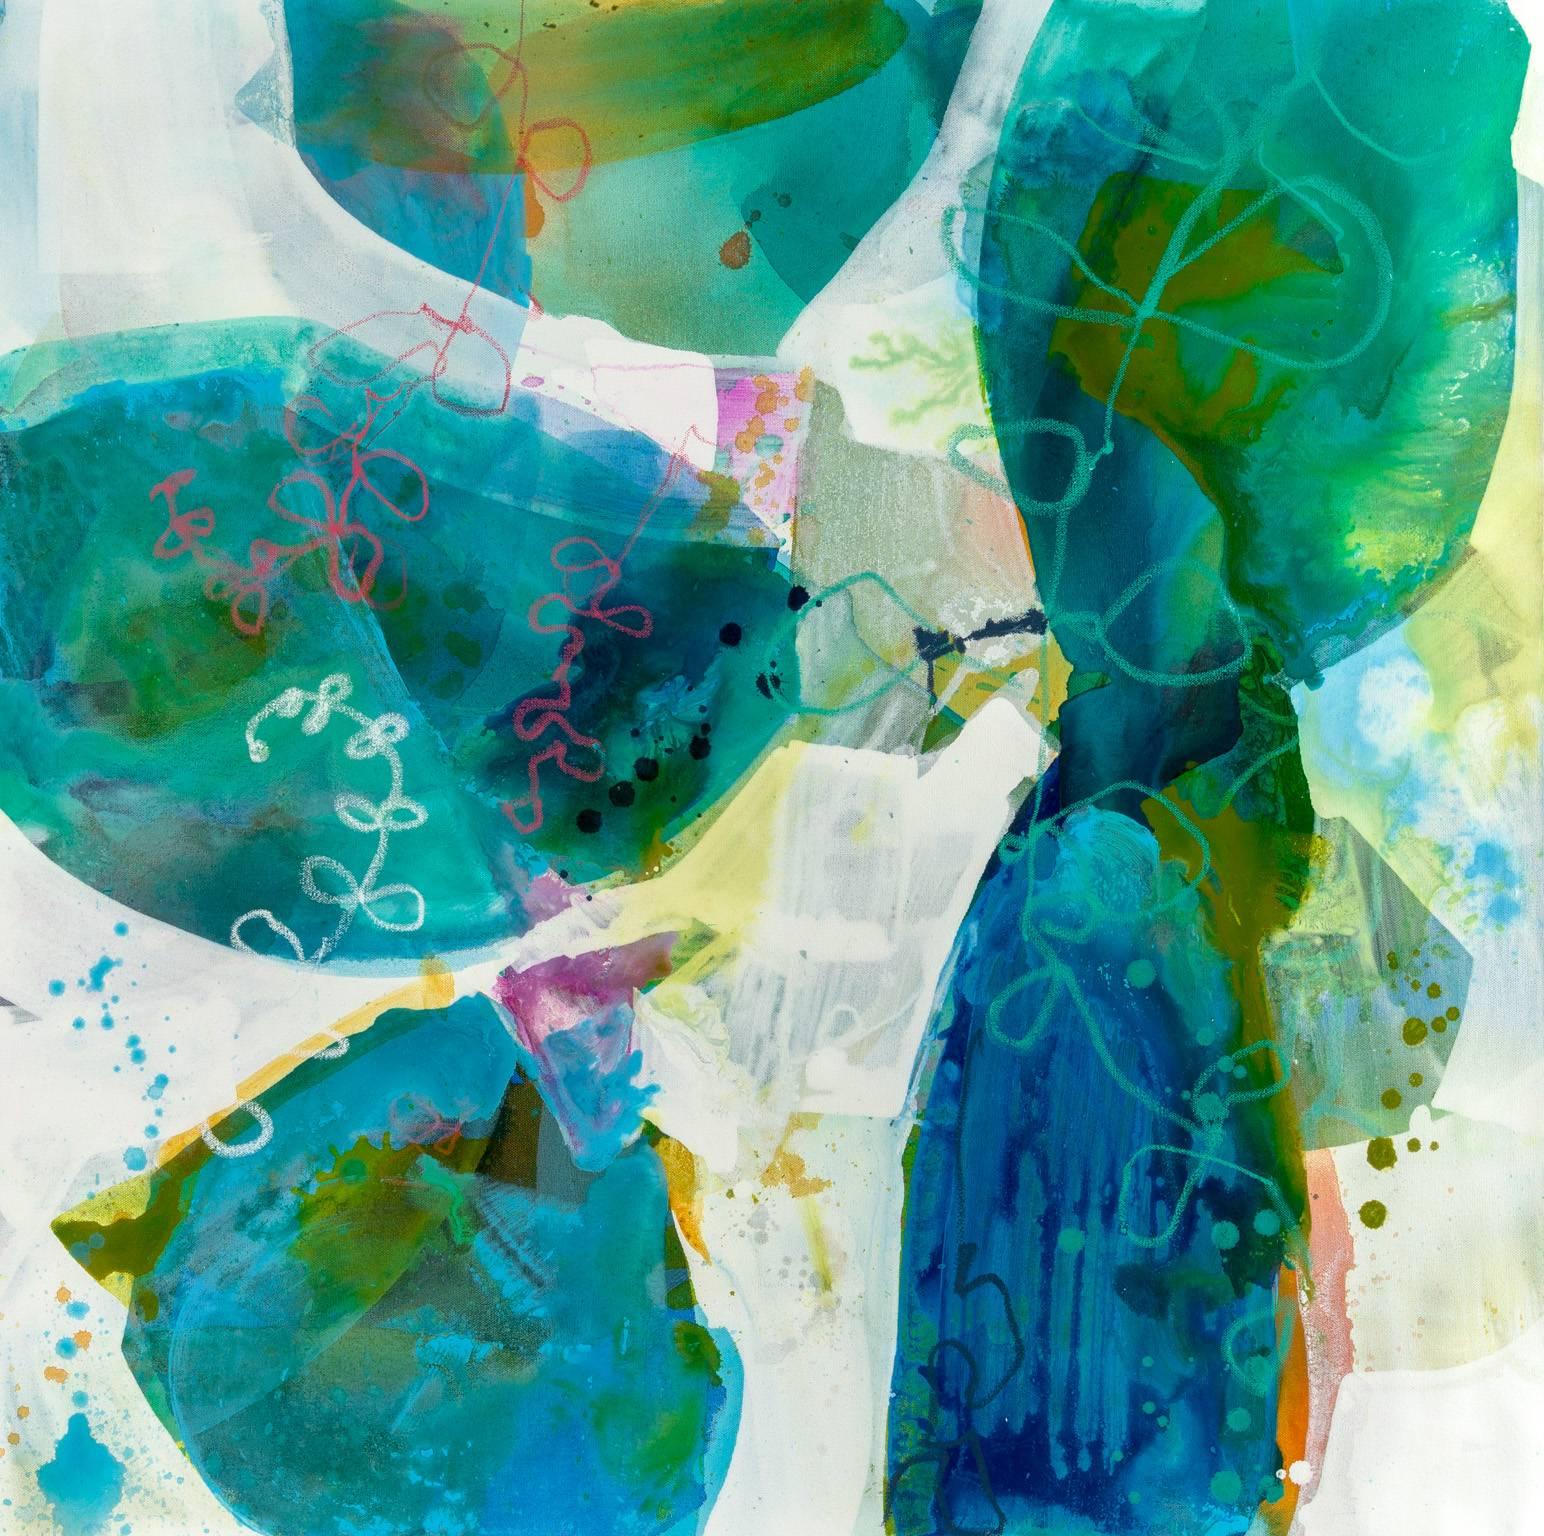 Water Petals XI - Mixed Media Art by Liz Barber Leventhal